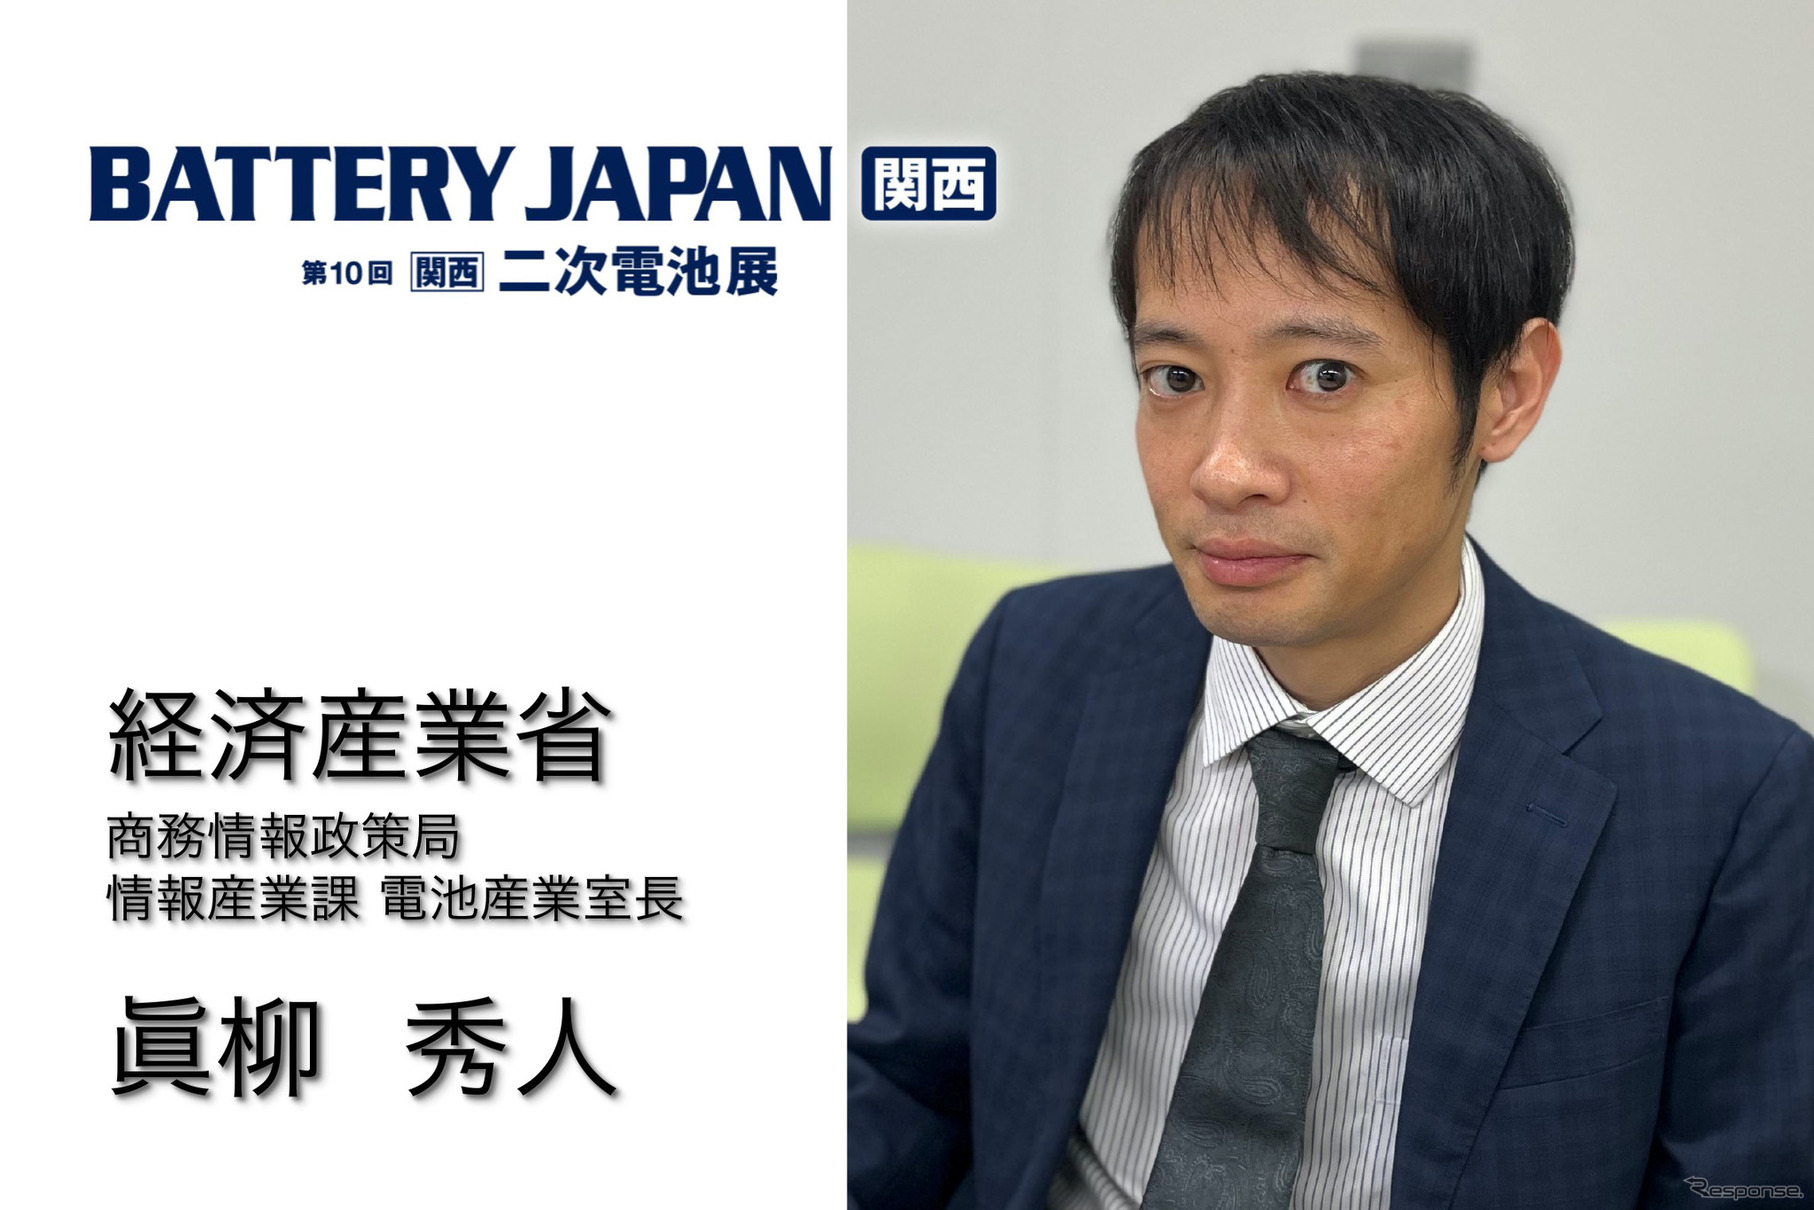 日本は蓄電池市場で「勝ち筋」を見出せるか？ 2030年に向けた7つのアクション…BATTERY JAPAN【関西】～第10回【関西】二次電池展～11月15日開幕